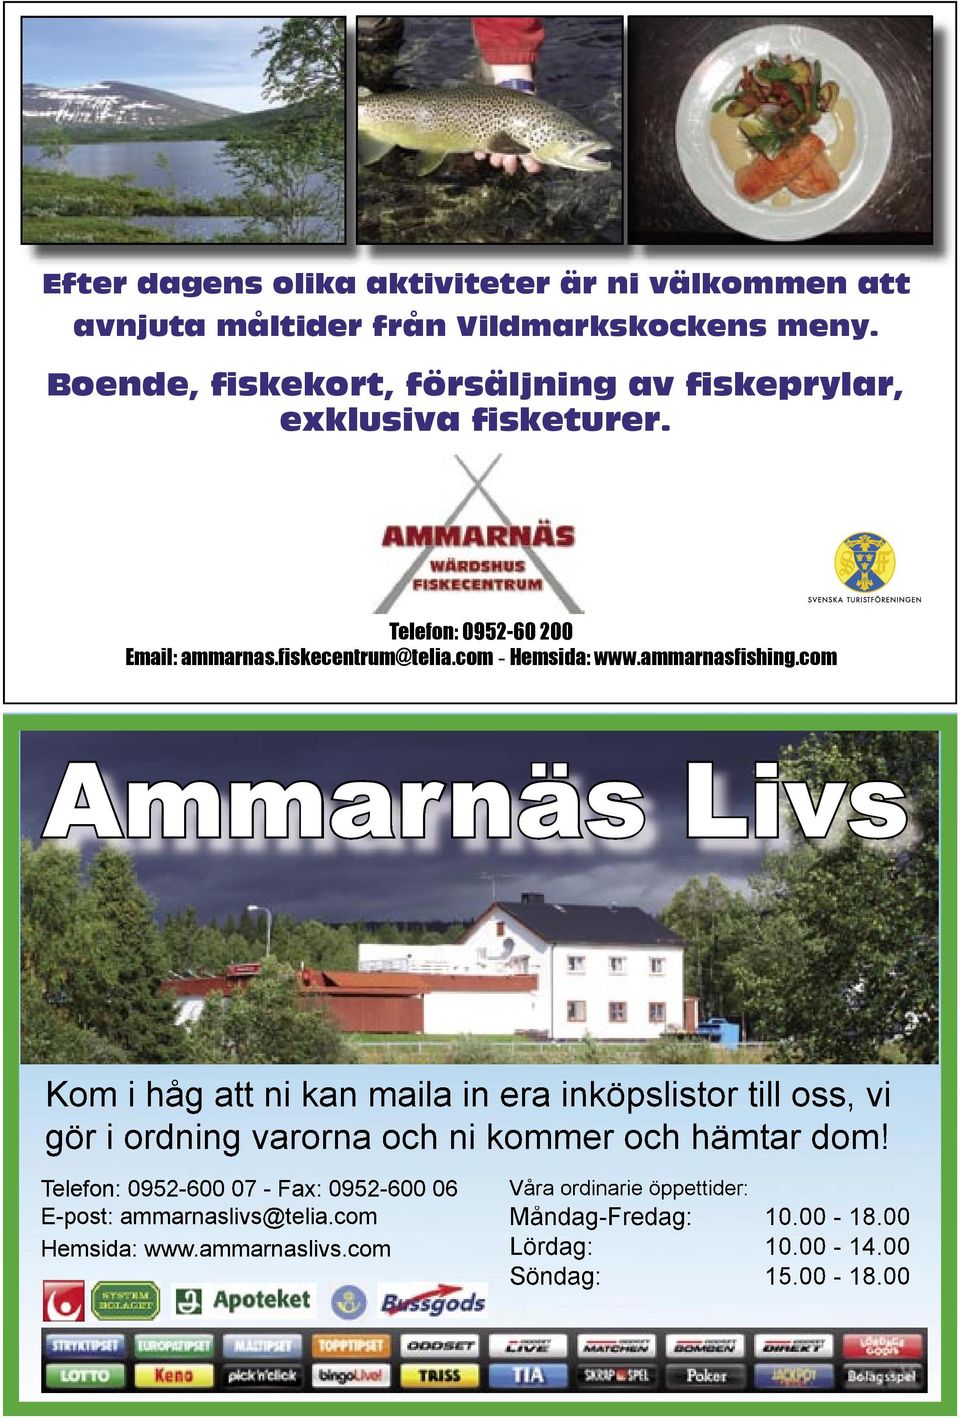 ammarnasfishing.com Ammarnäs Livs Kom i håg att ni kan maila in era inköpslistor till oss, vi gör i ordning varorna och ni kommer och hämtar dom!